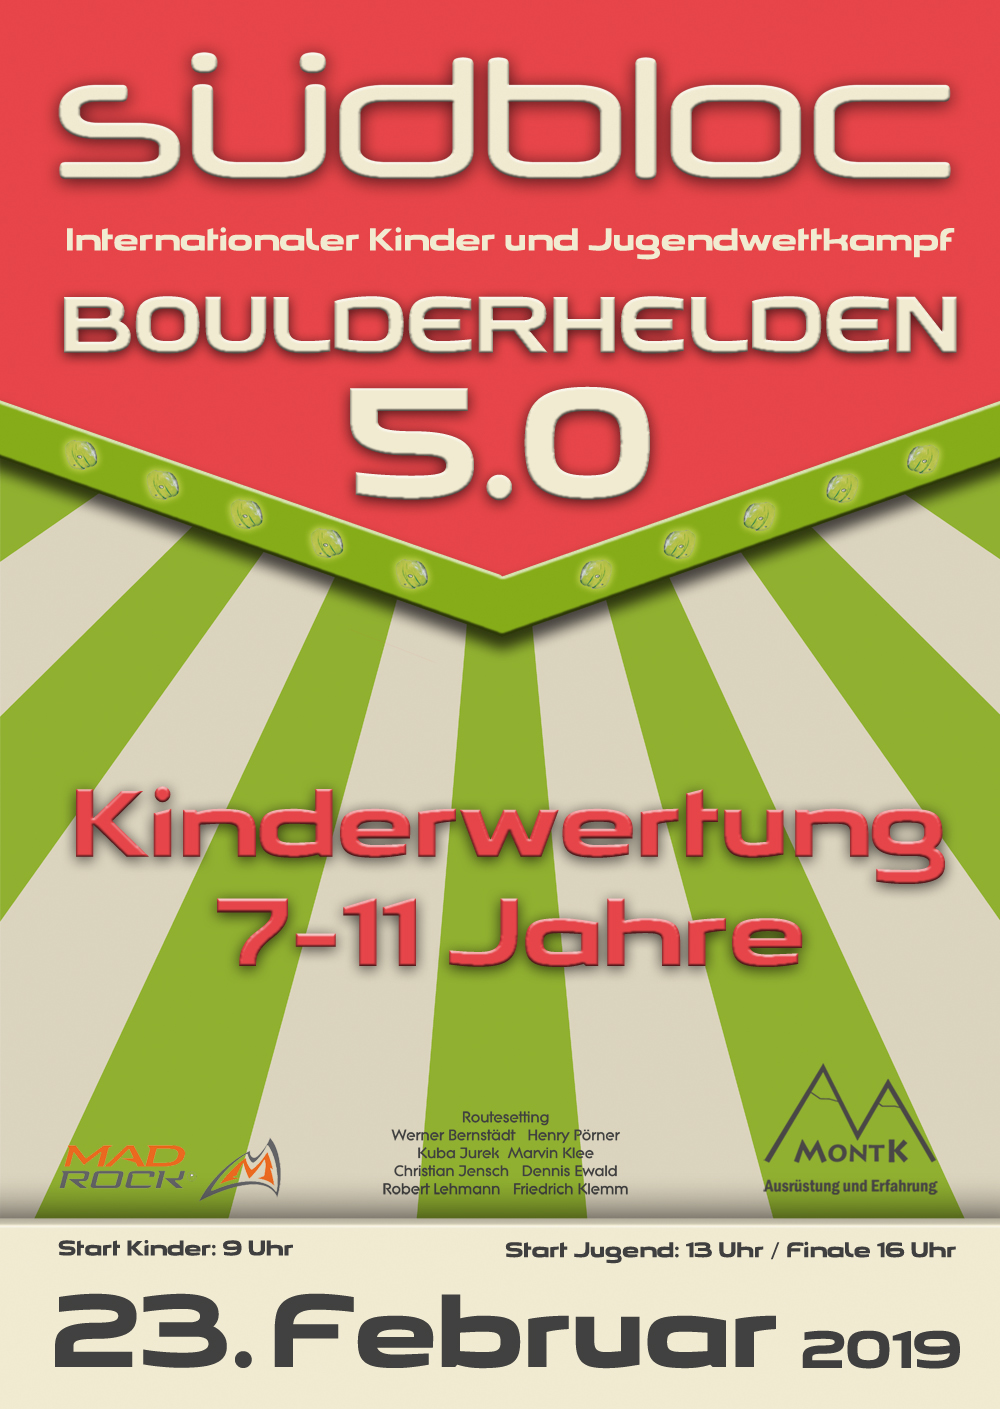 Poster für Südbloc Boulderhelden 5.0 - Kinderwertung